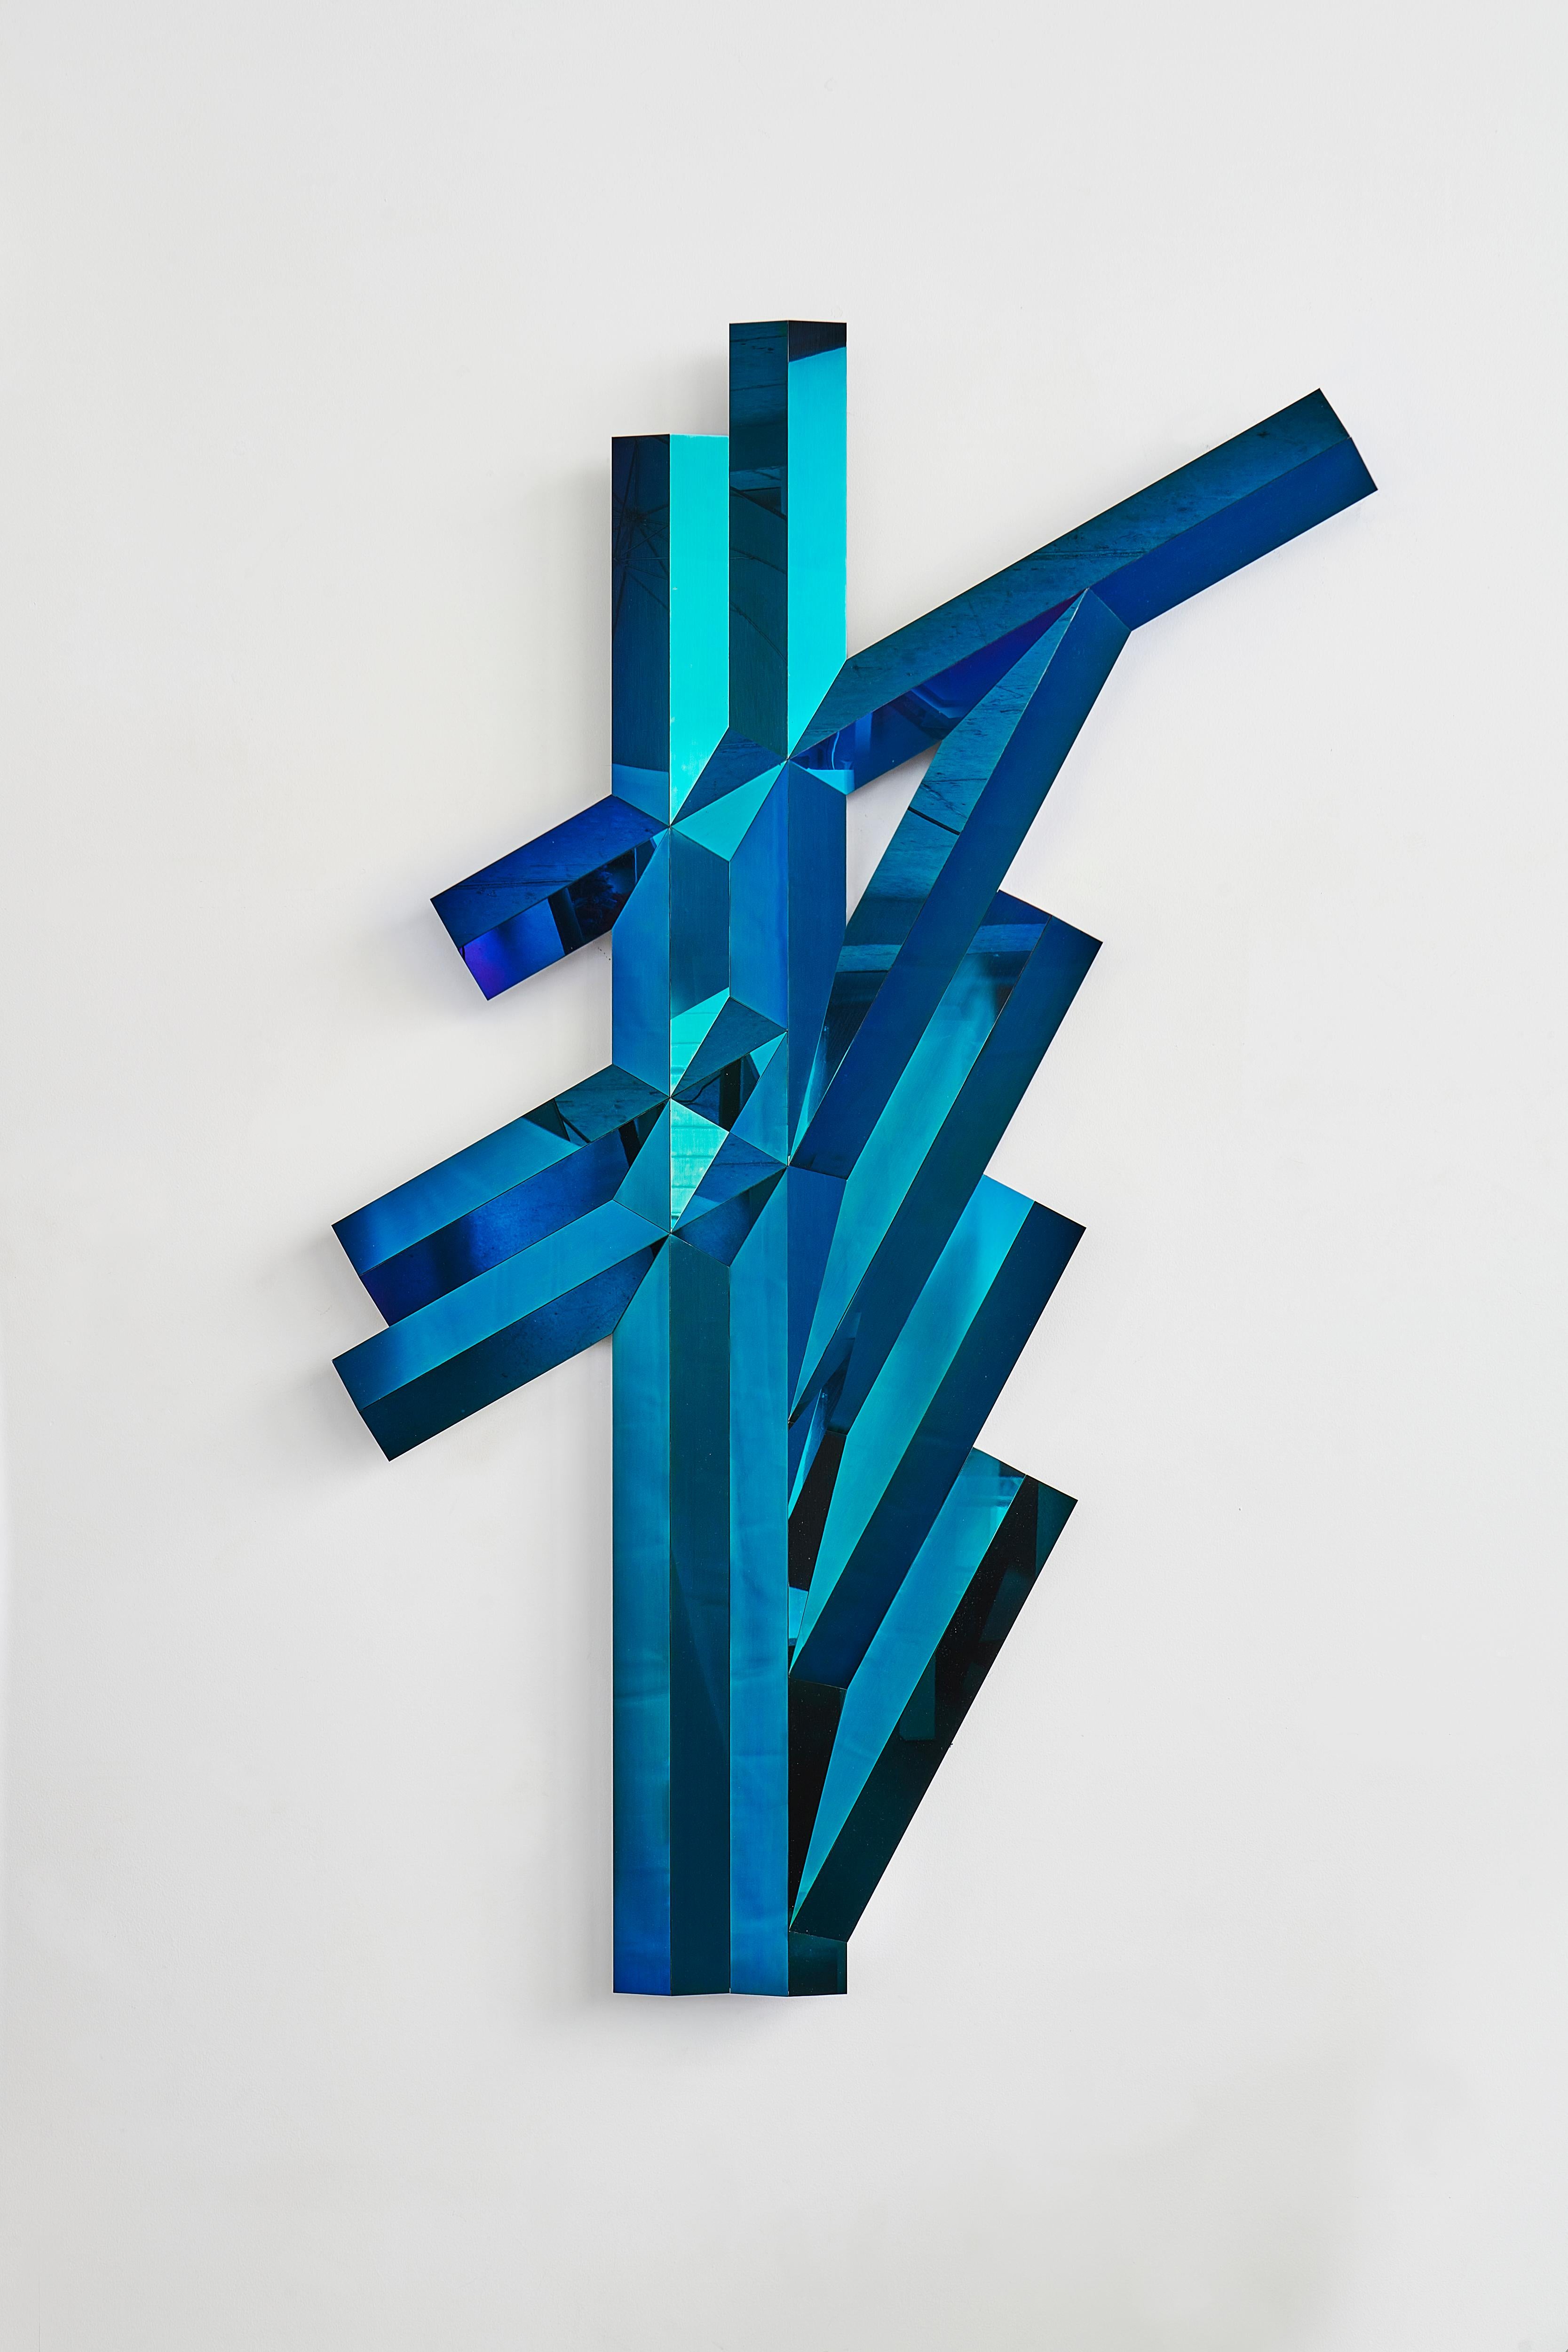 Blaue Spiegelskulptur „ Galactica I“ von SB26
Abmessungen: B 92 x T 10 x H 148 cm
MATERIALIEN: Nichtrostender Stahl, Blau Endbearbeitung.

Galactica ist ein visuelles Vokabular, das sowohl vom Retro-Futurismus als auch von der Architektur inspiriert